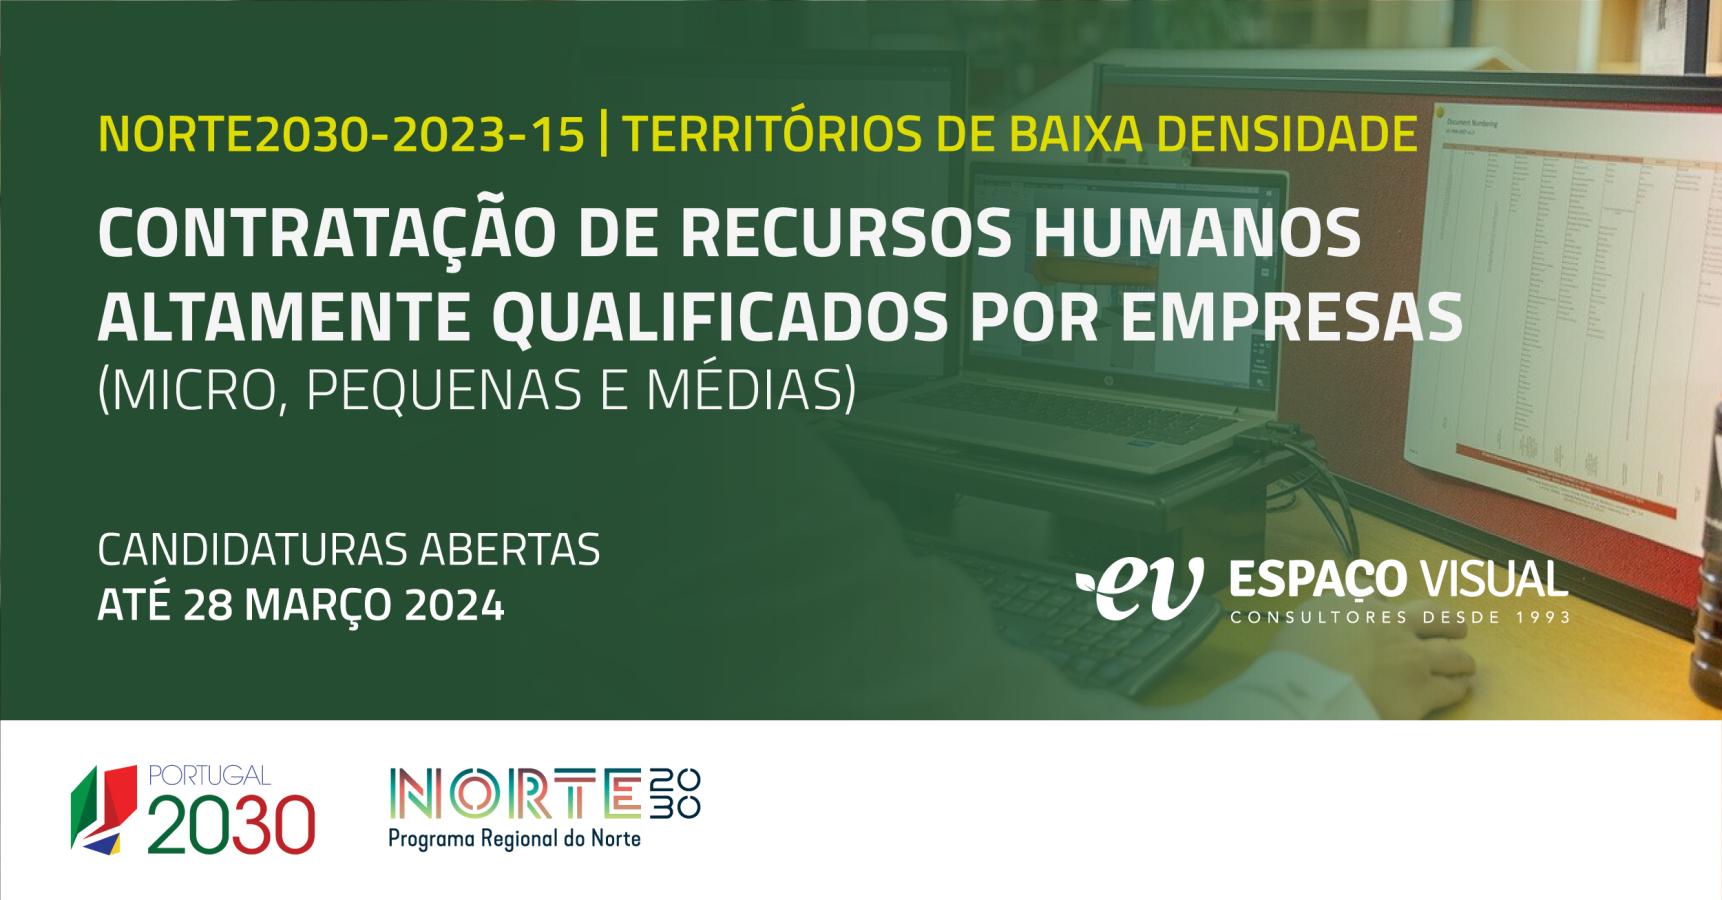 Contratação de Recursos Humanos Altamente Qualificados por empresas (micro, pequenas e médias) – Territórios de baixa densidade | NORTE2030-2023-15